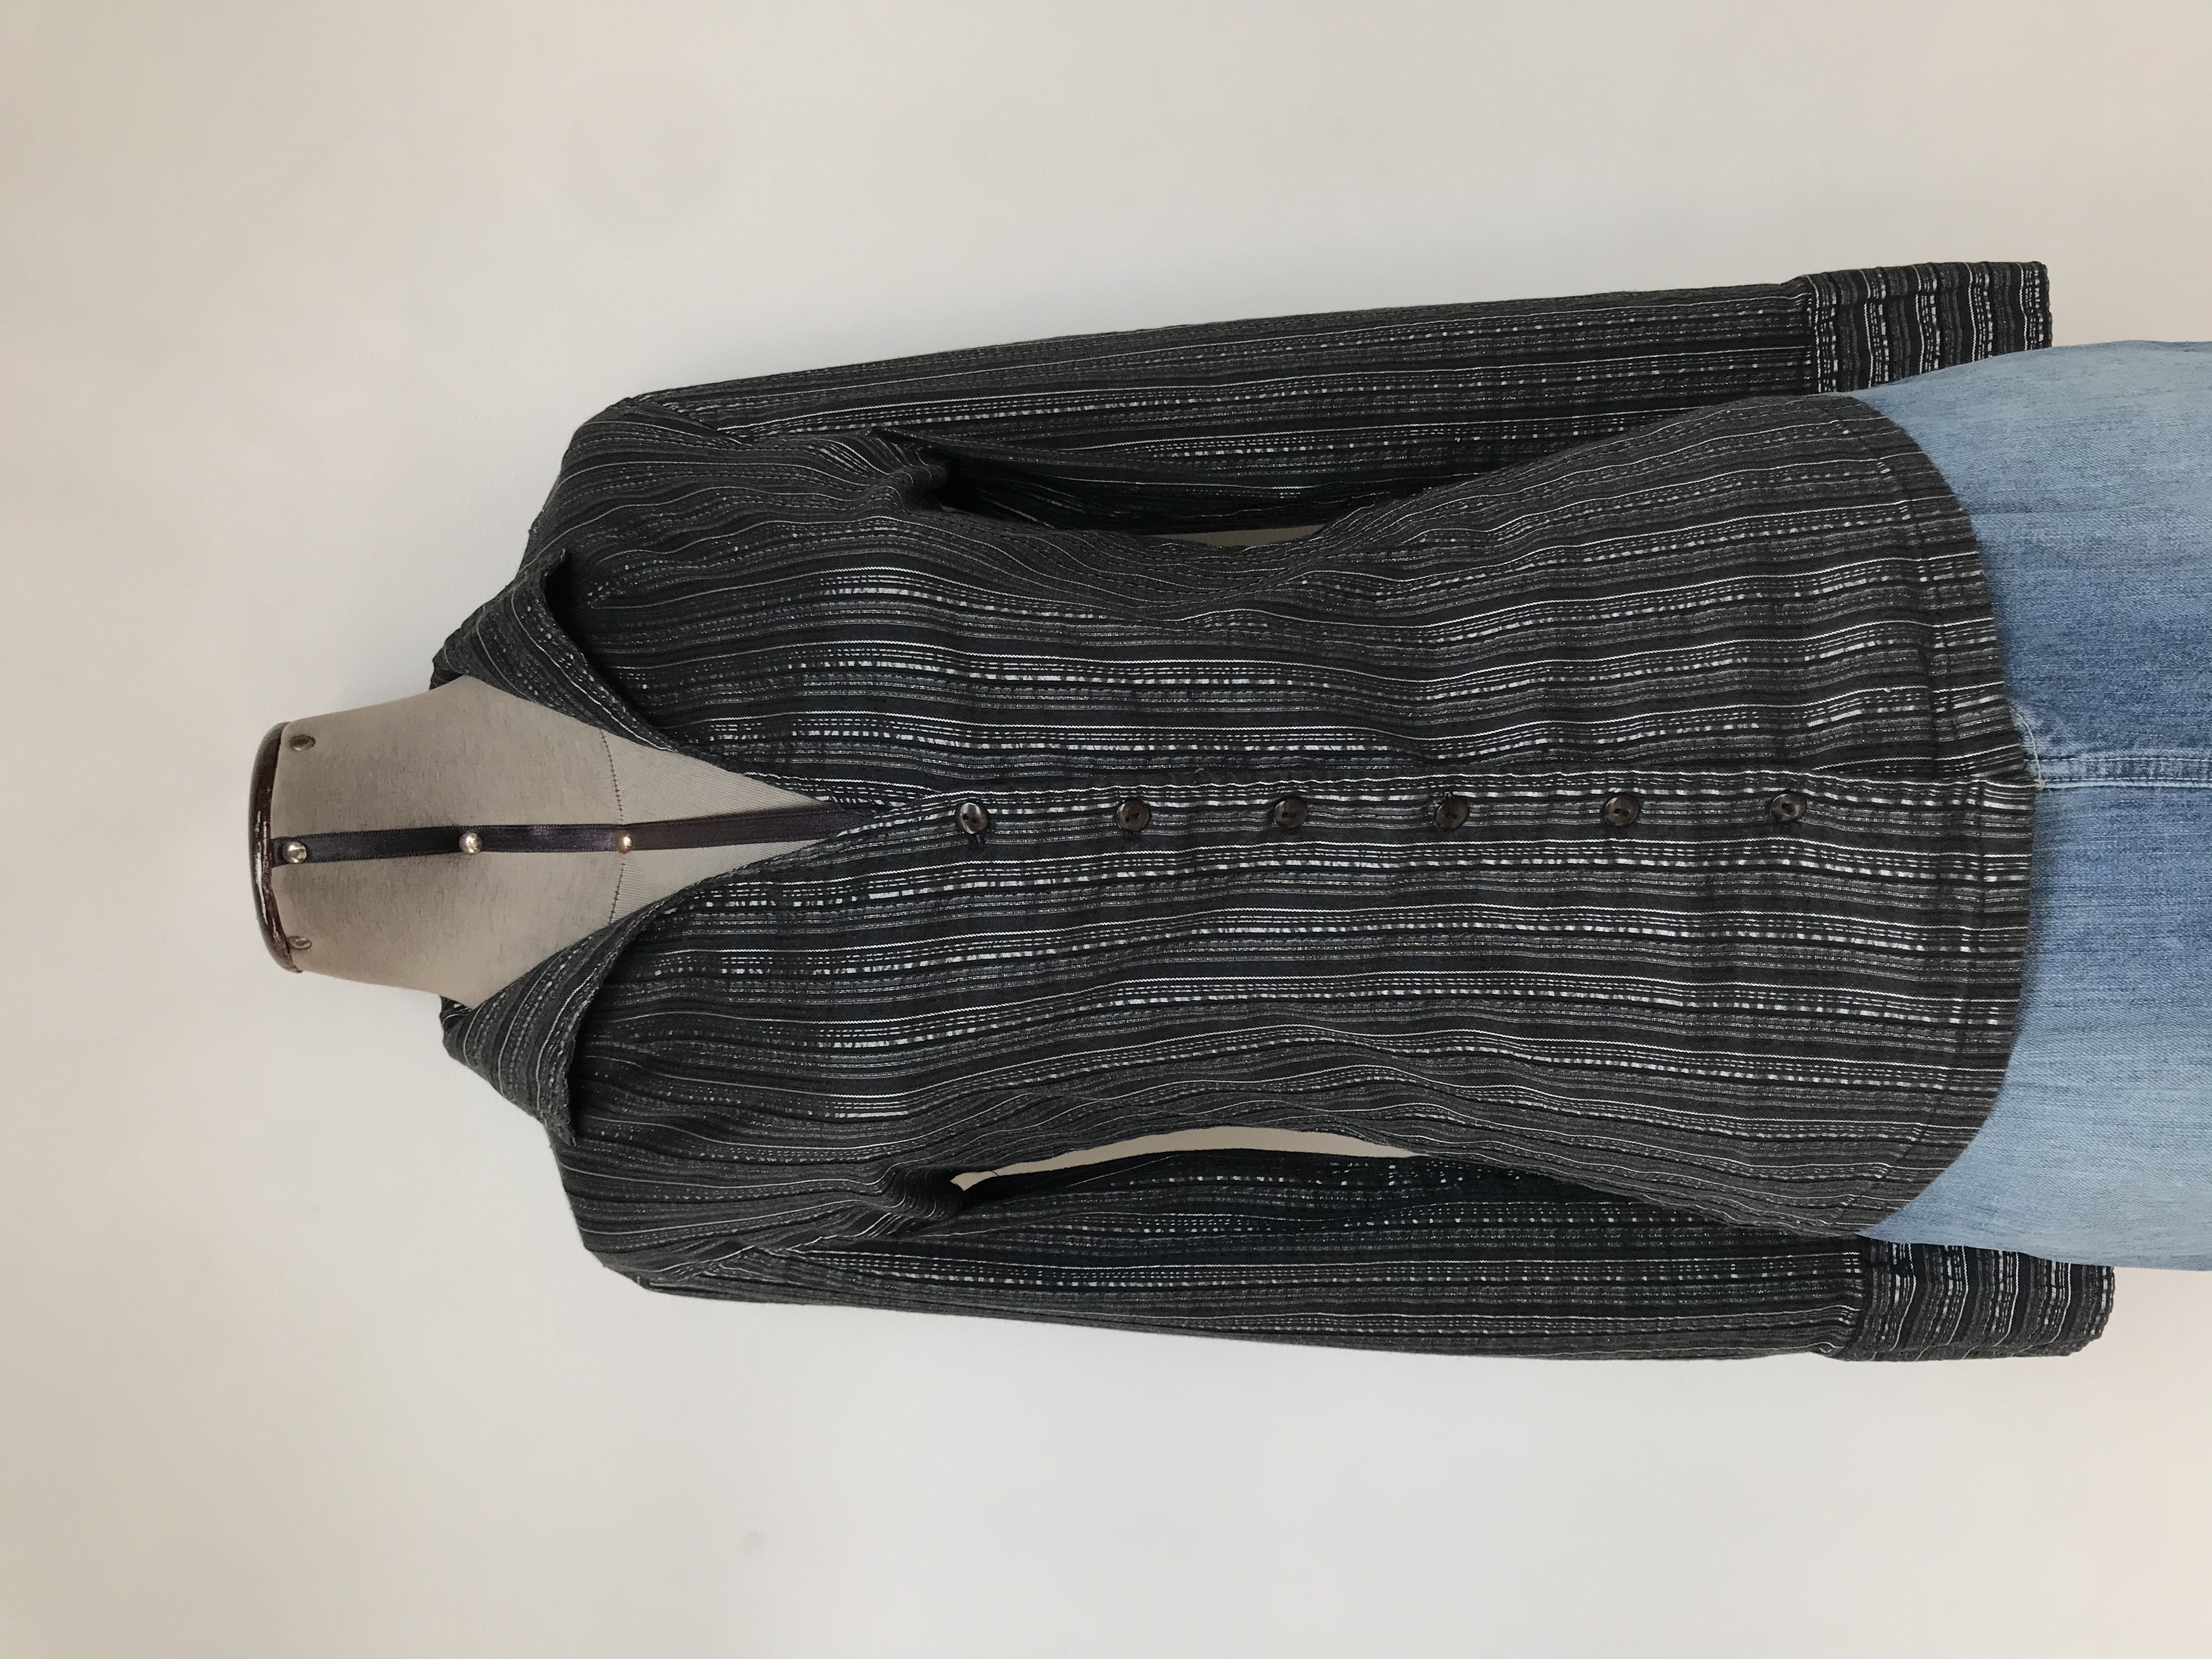 Blusa negra con rayas grises y plateadas, 95% algodón, escote en V y botones delanteros, manga larga con puños anchos 
Talla S